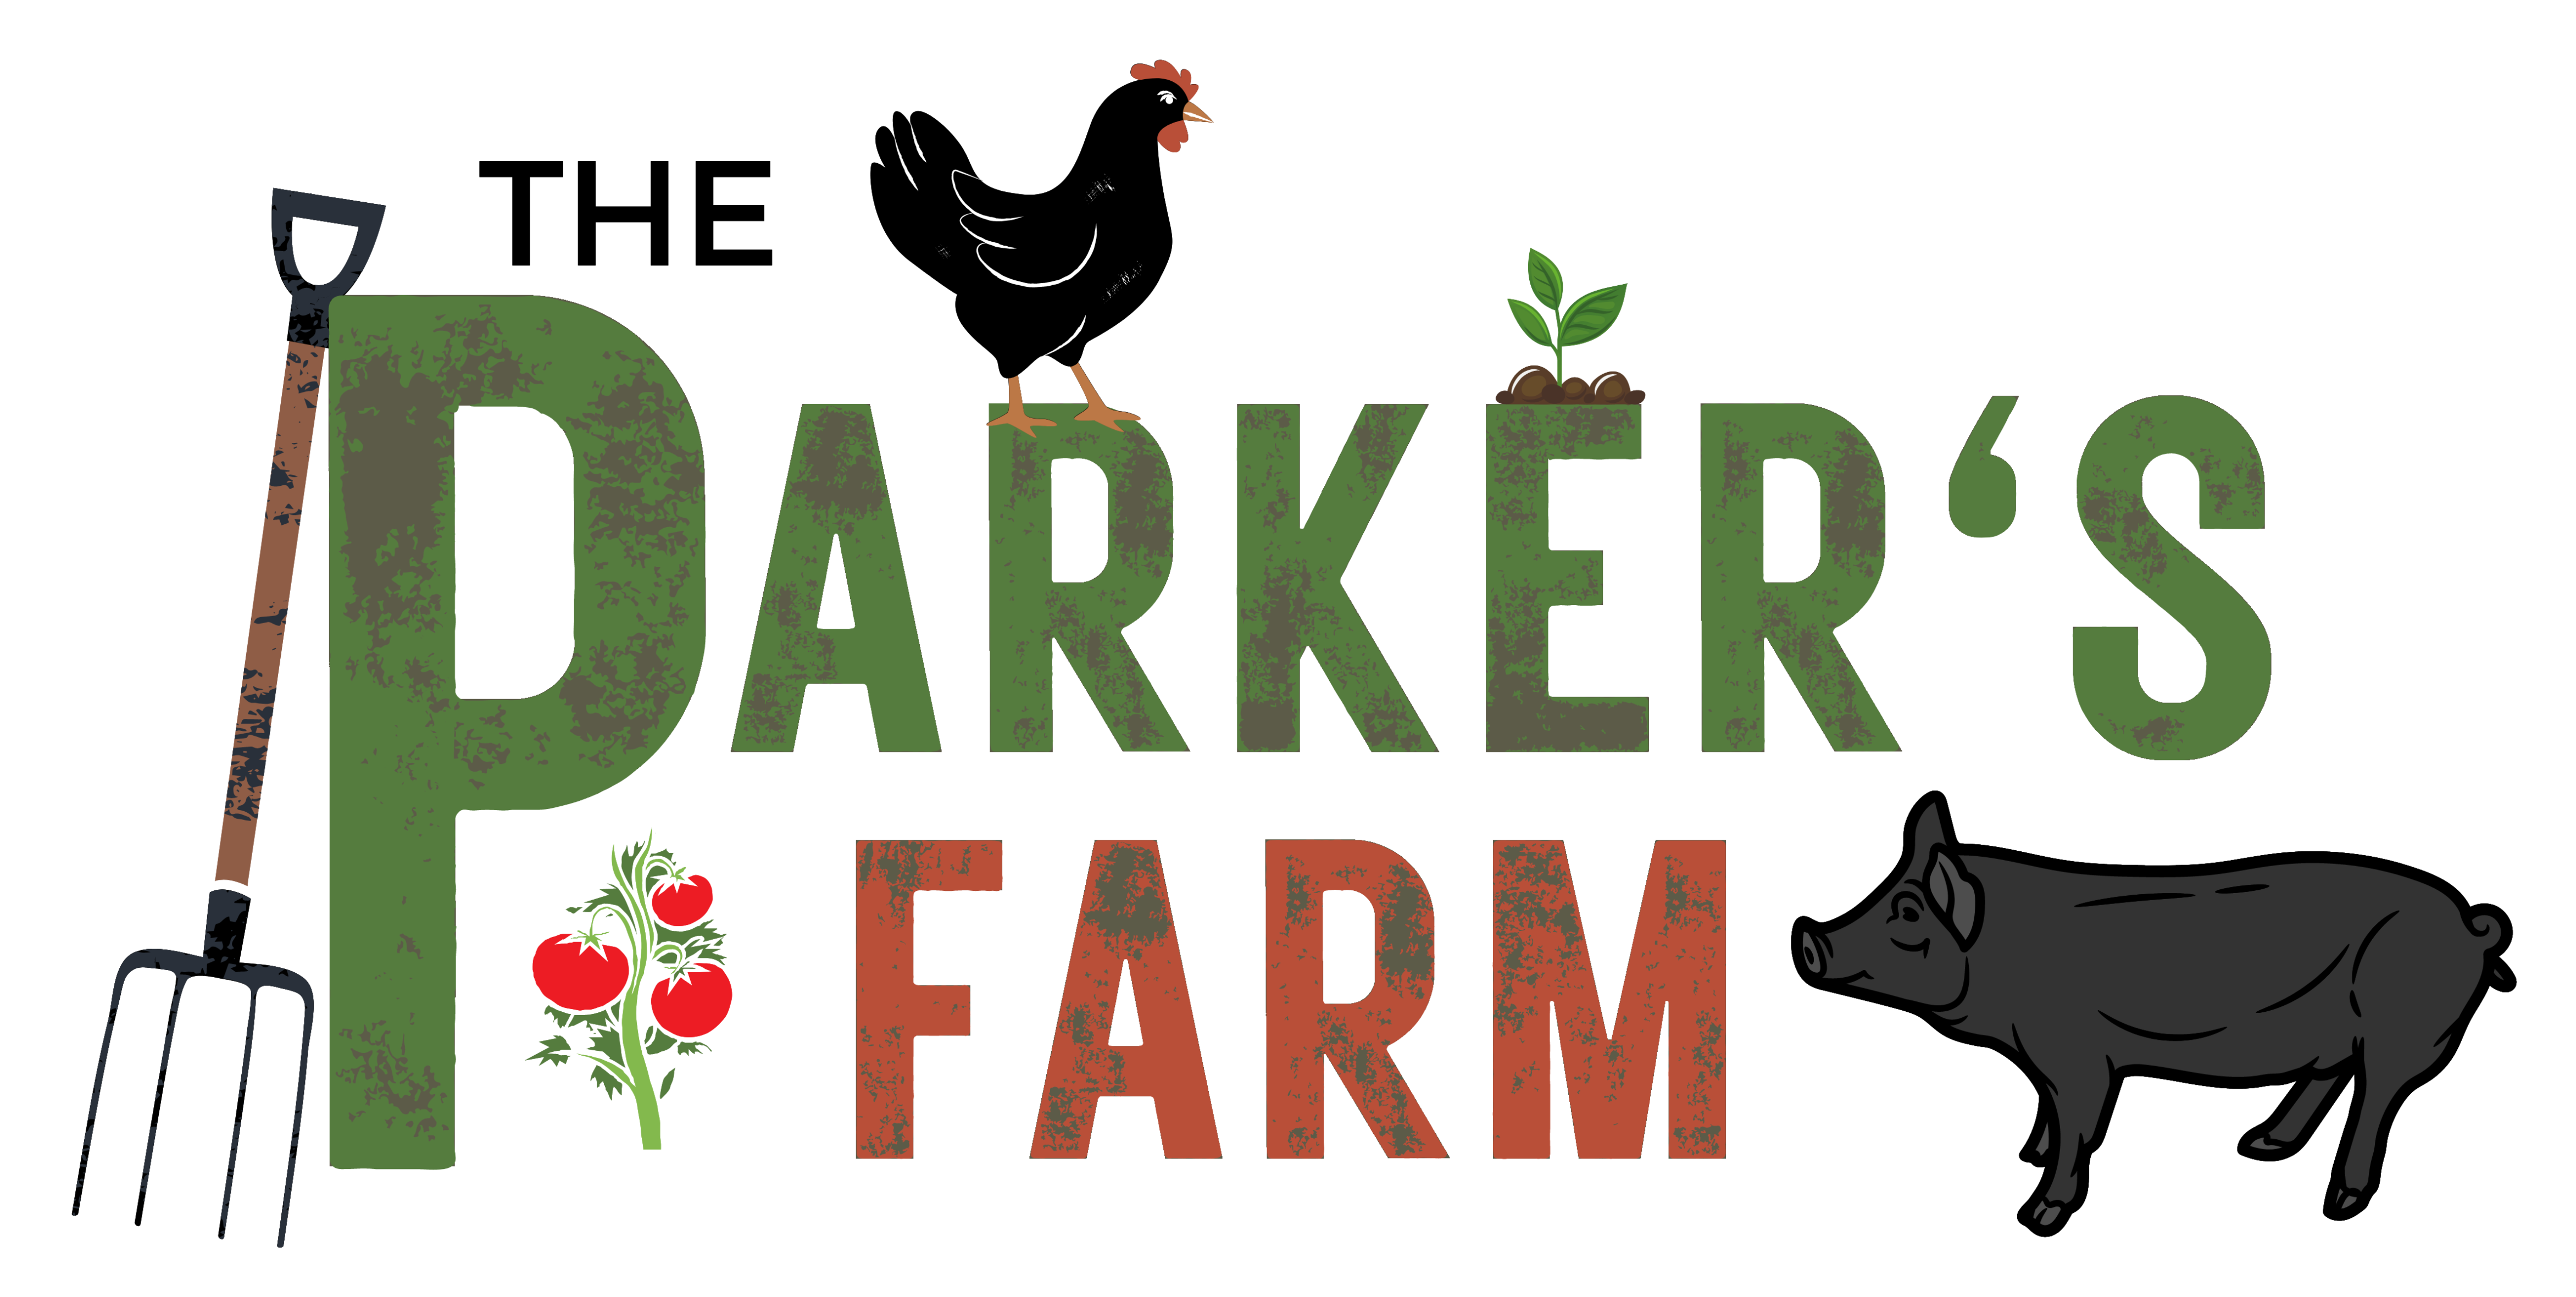 The Parker's Farm